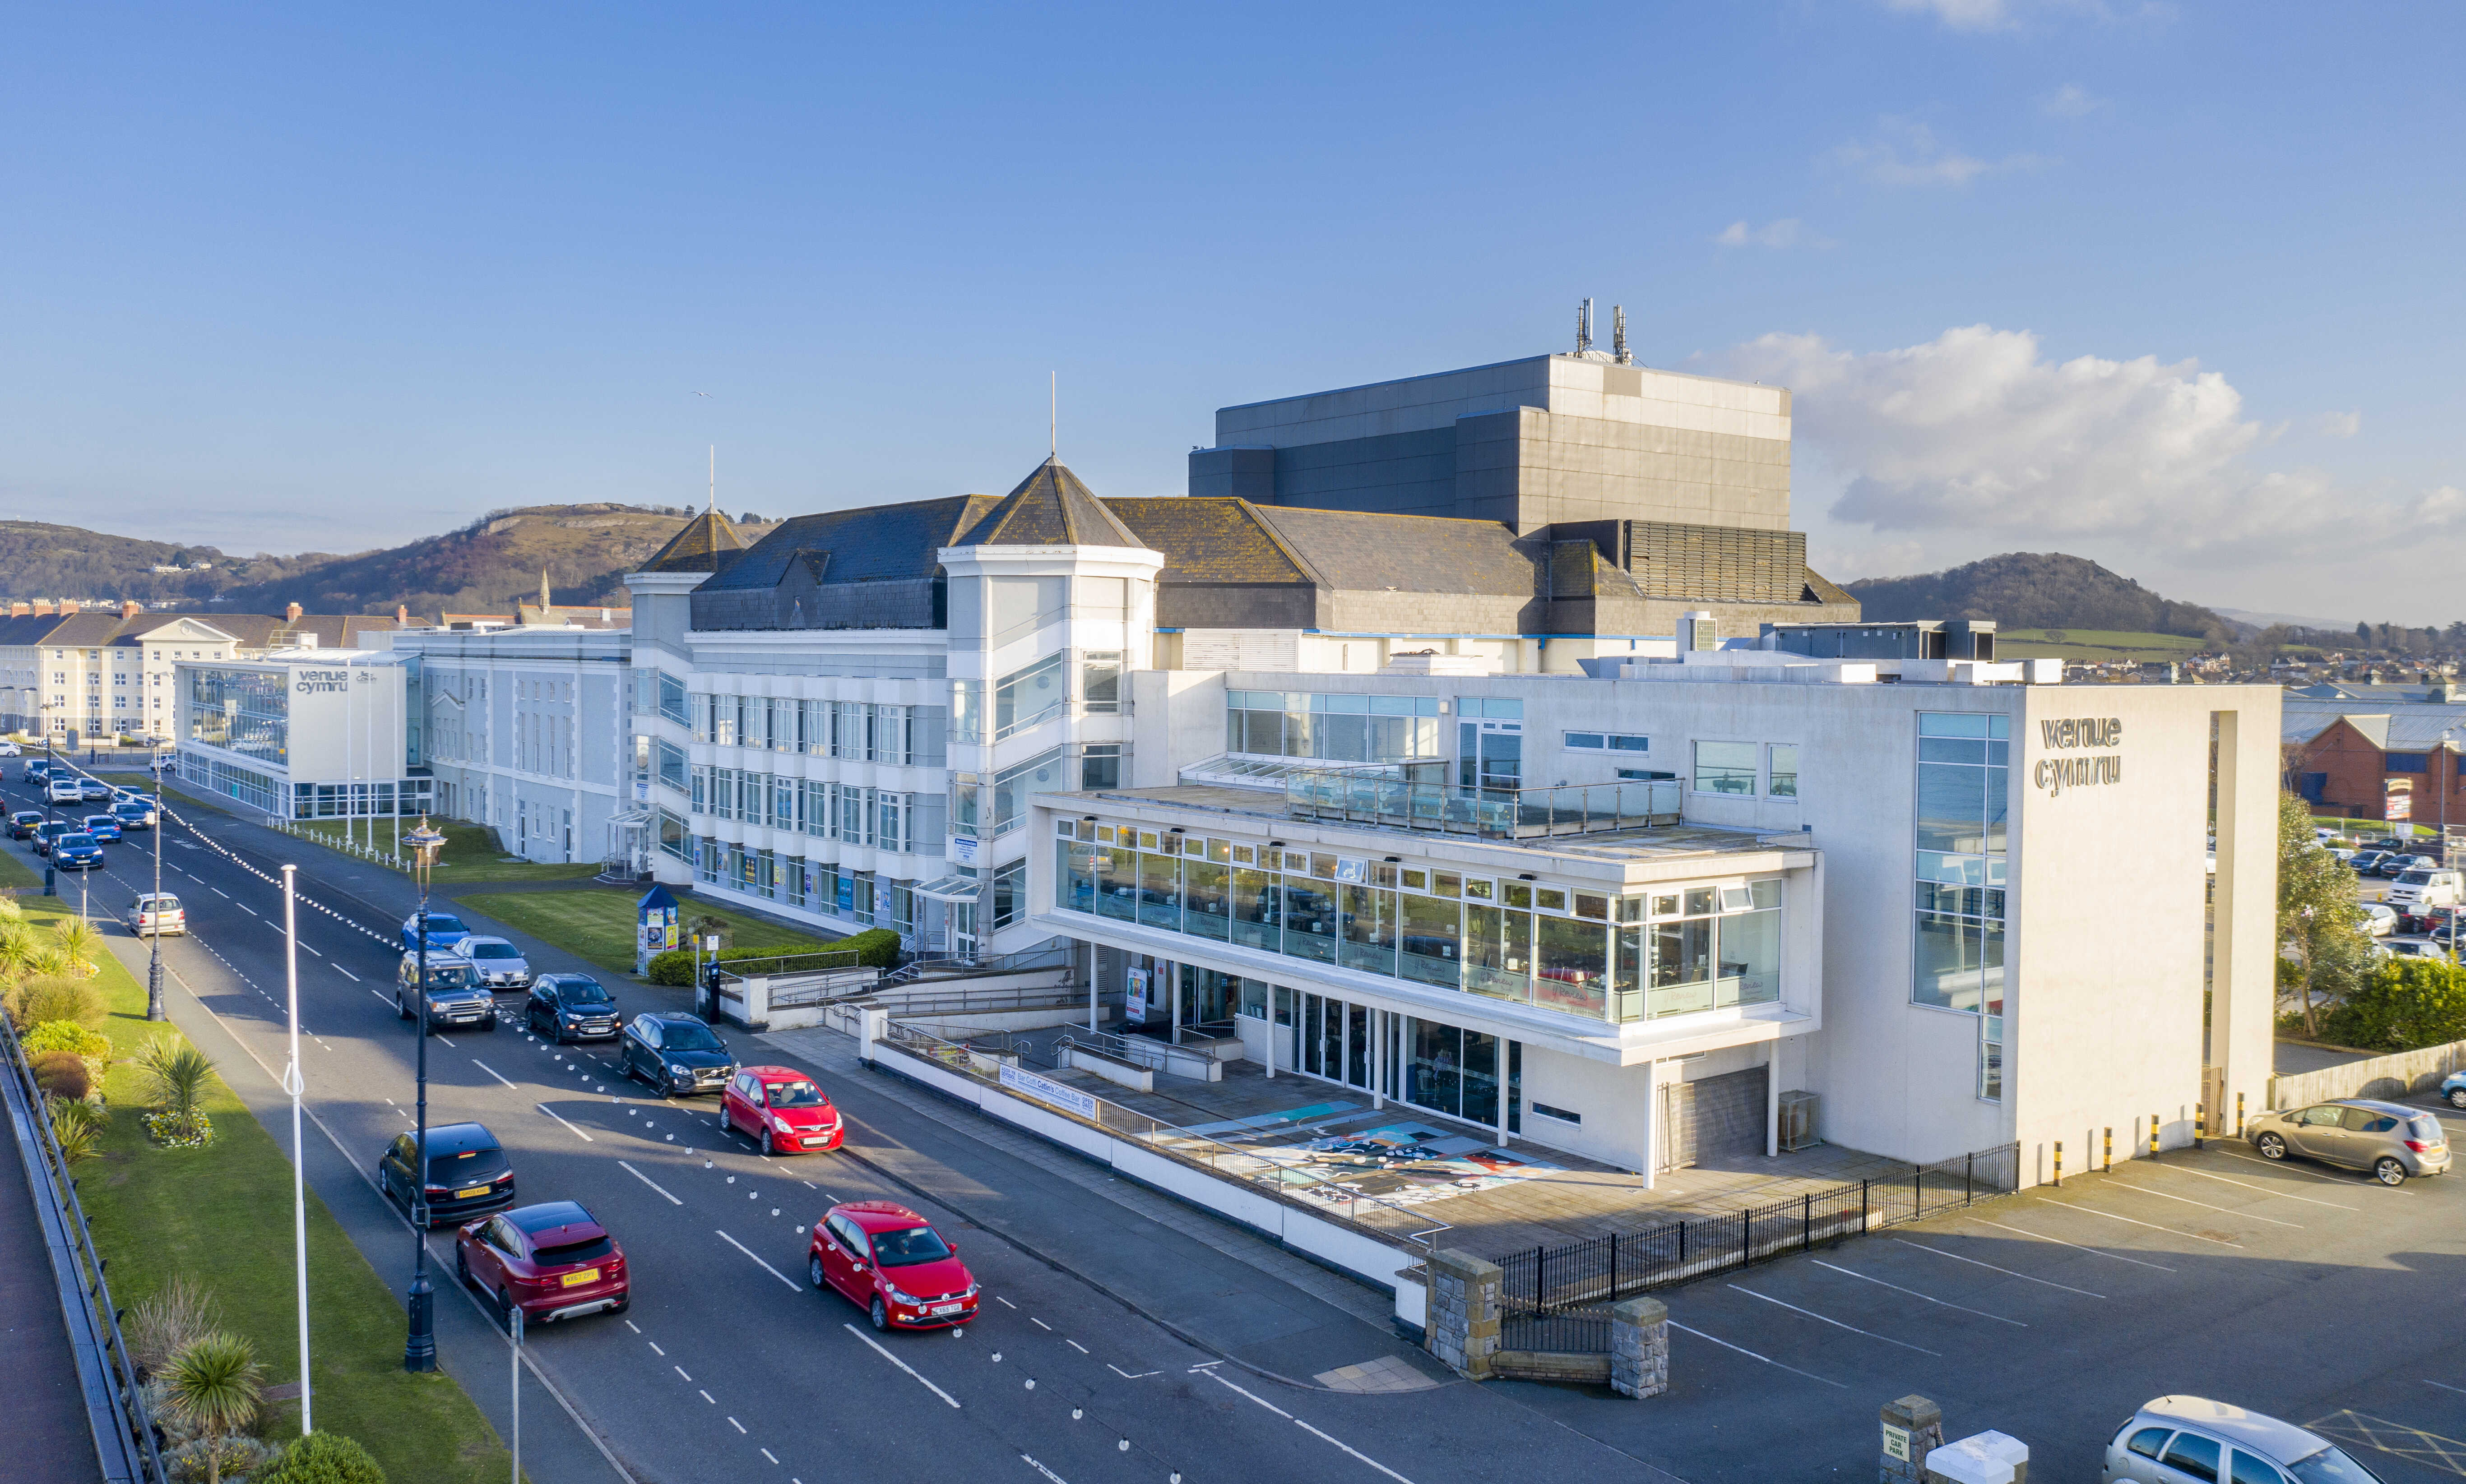 External image of Venue Cymru